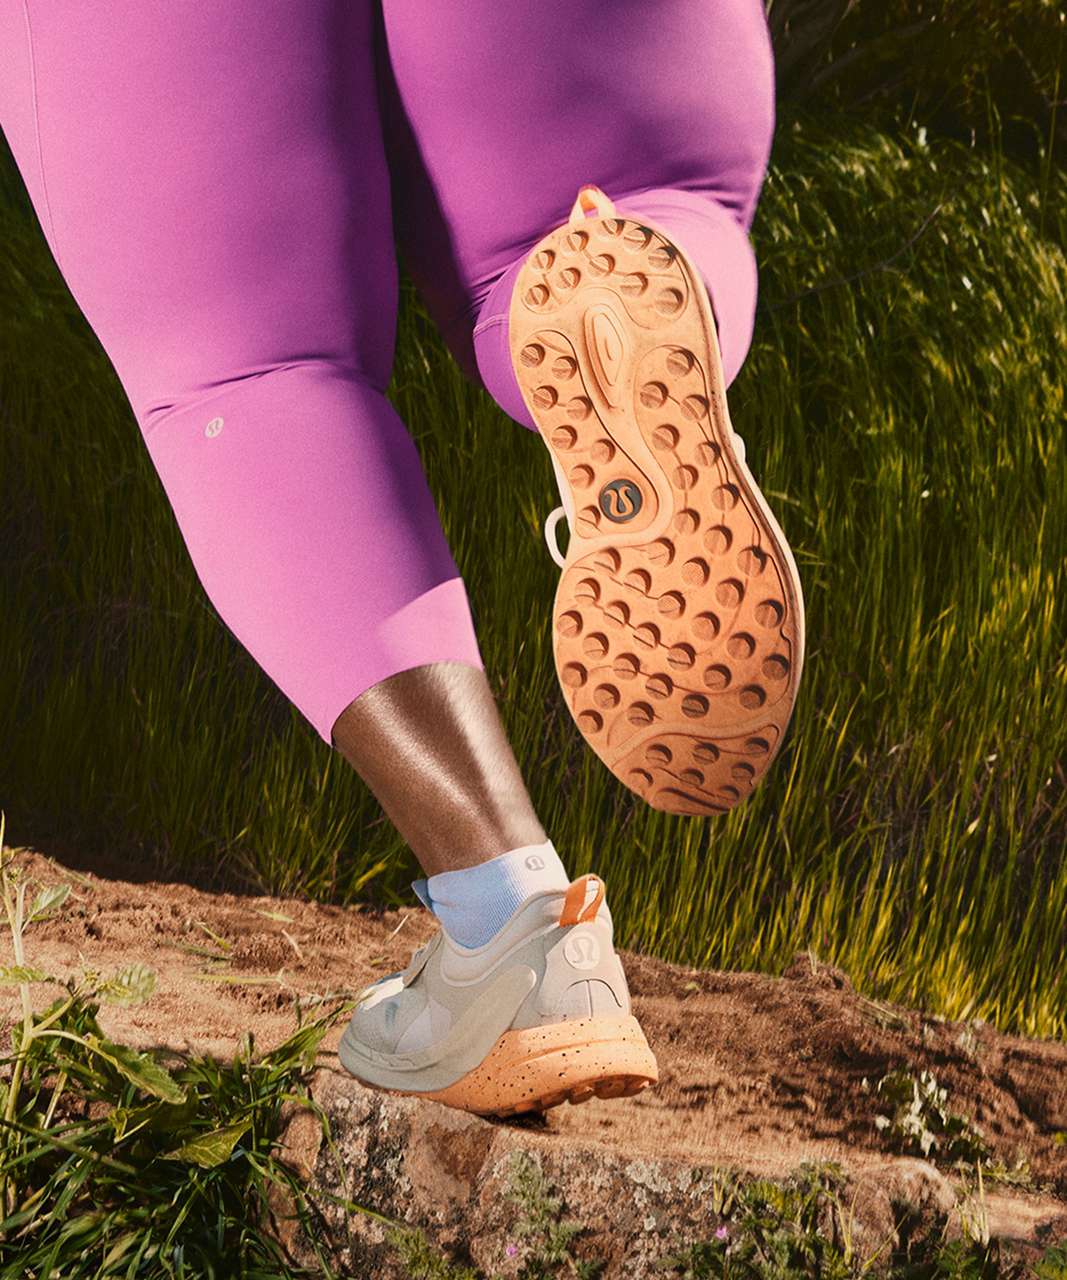 Blissfeel Trail Women's Running Shoe, Women's Shoes